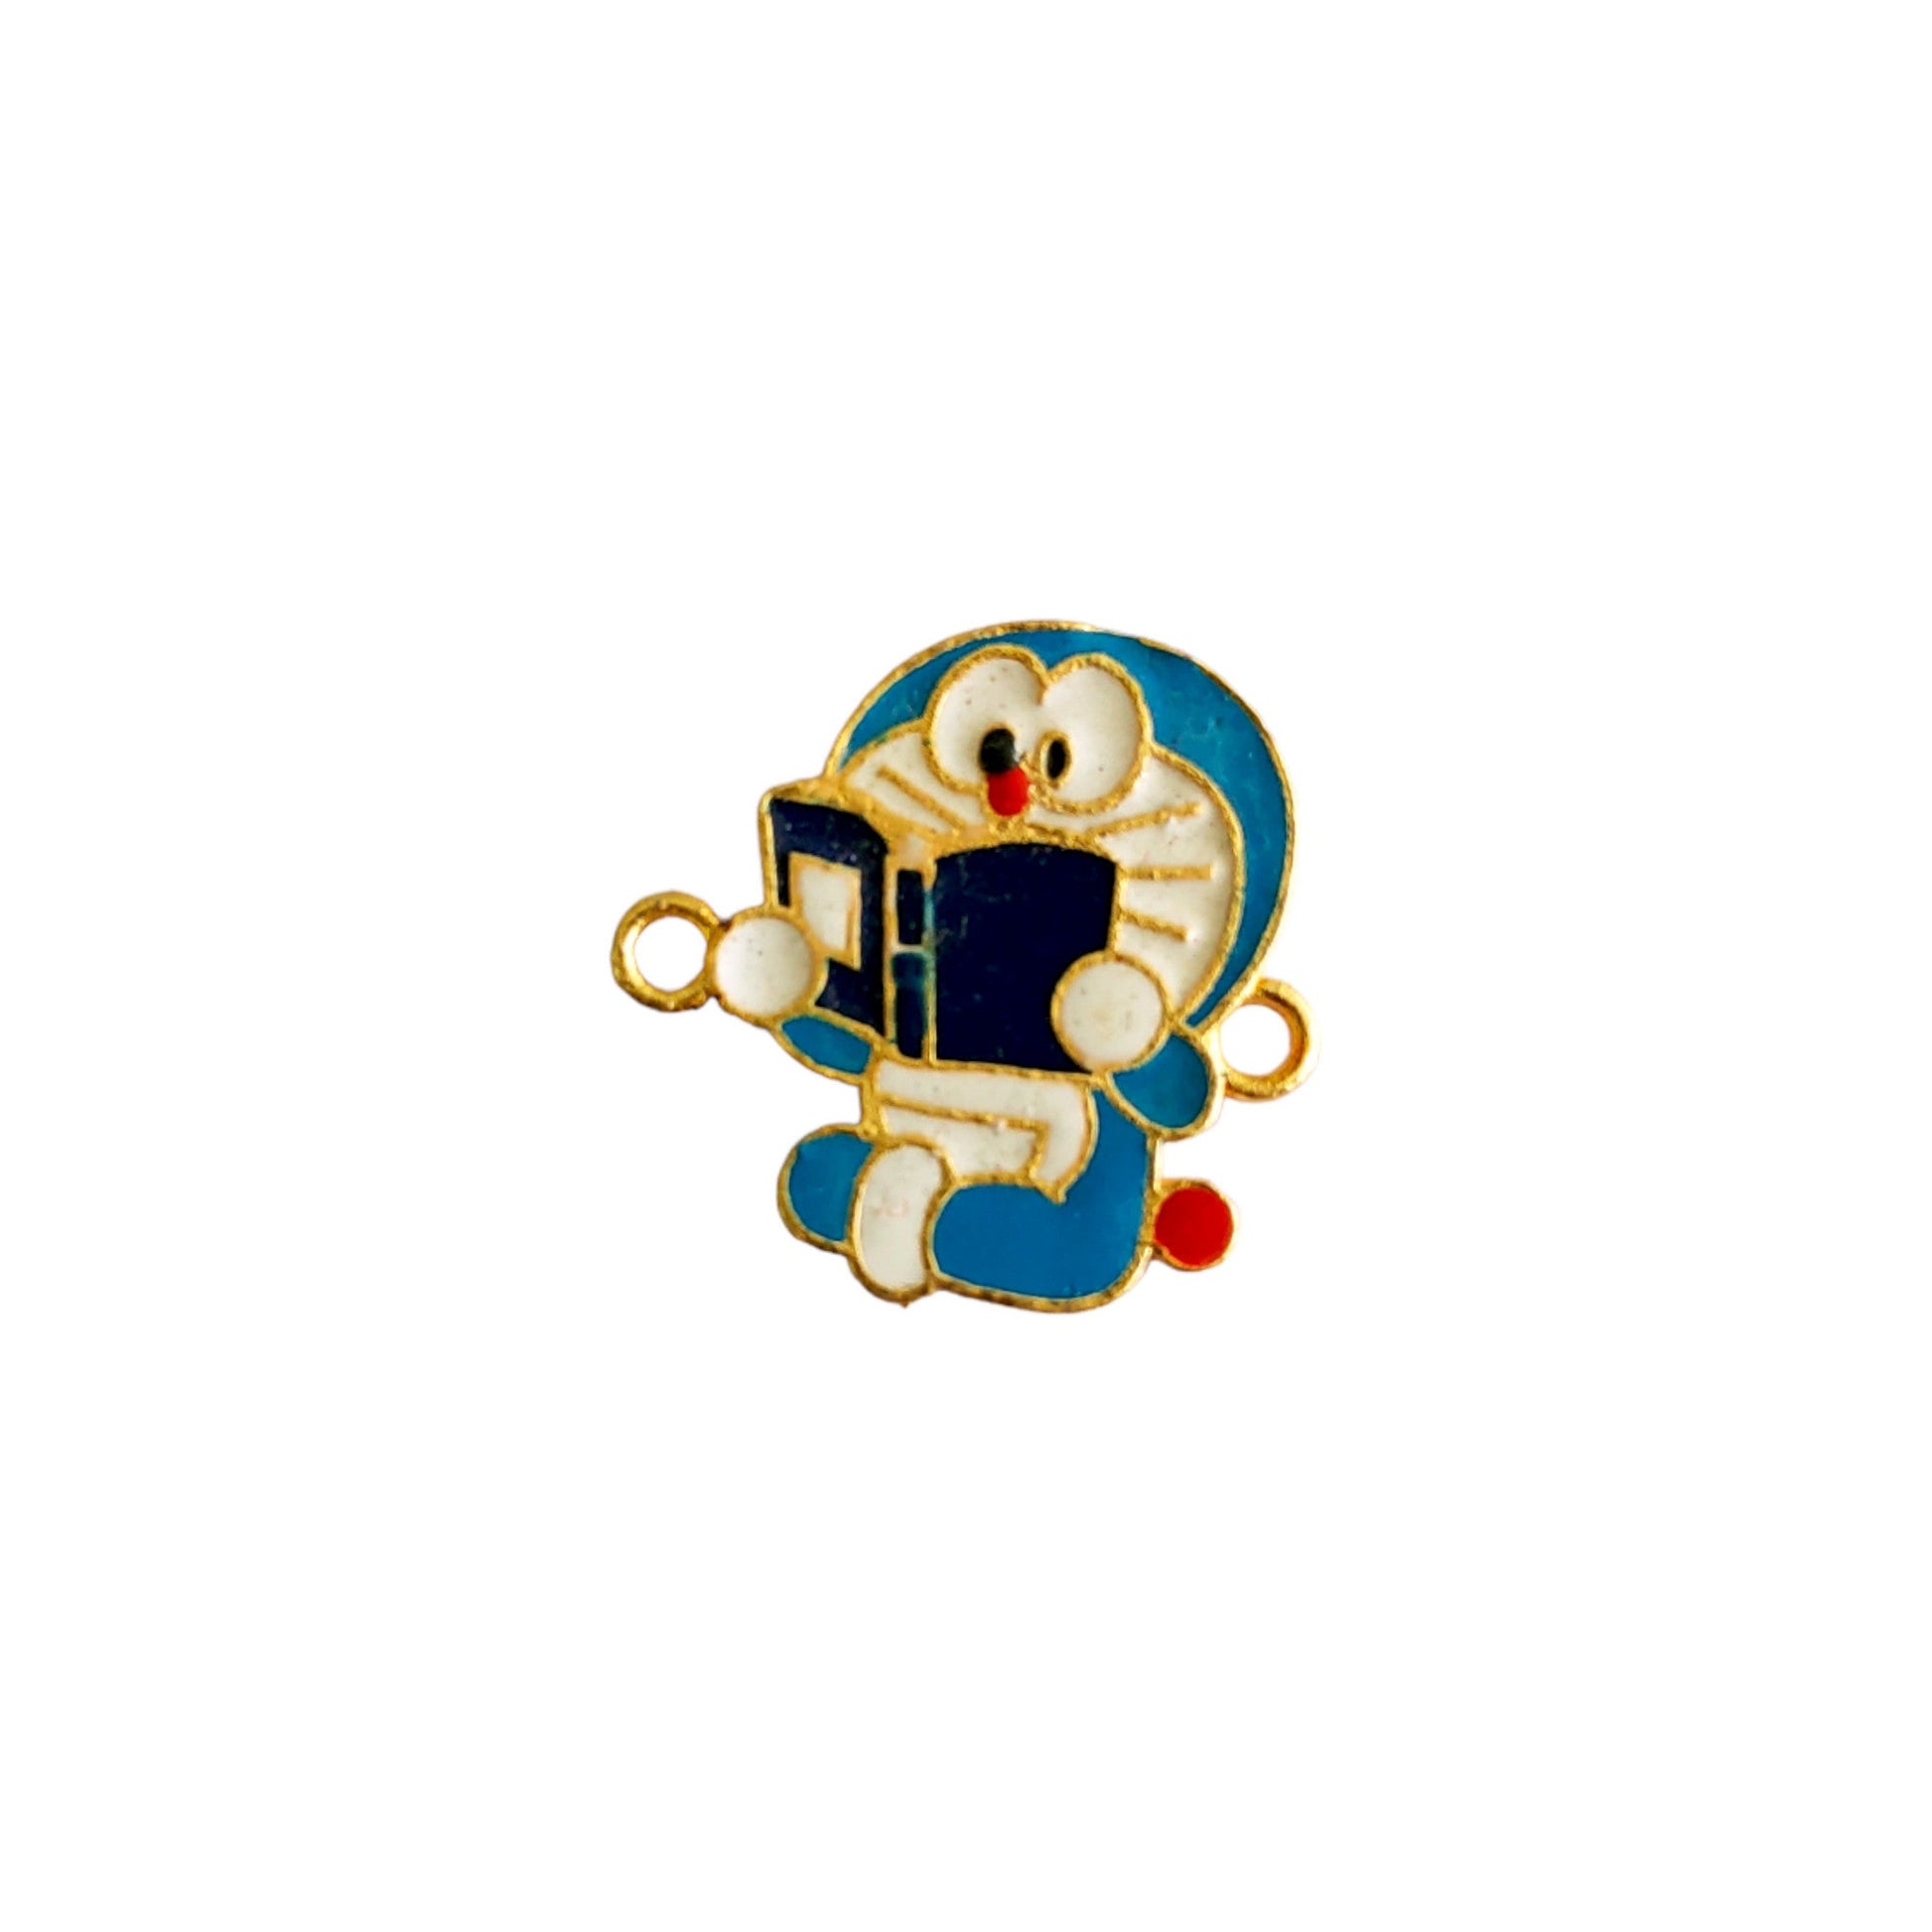 Indian Petals Doraemon Shape Metal Mazak Motif for Rakhi, Jewelry designing and Craft Making or Decor